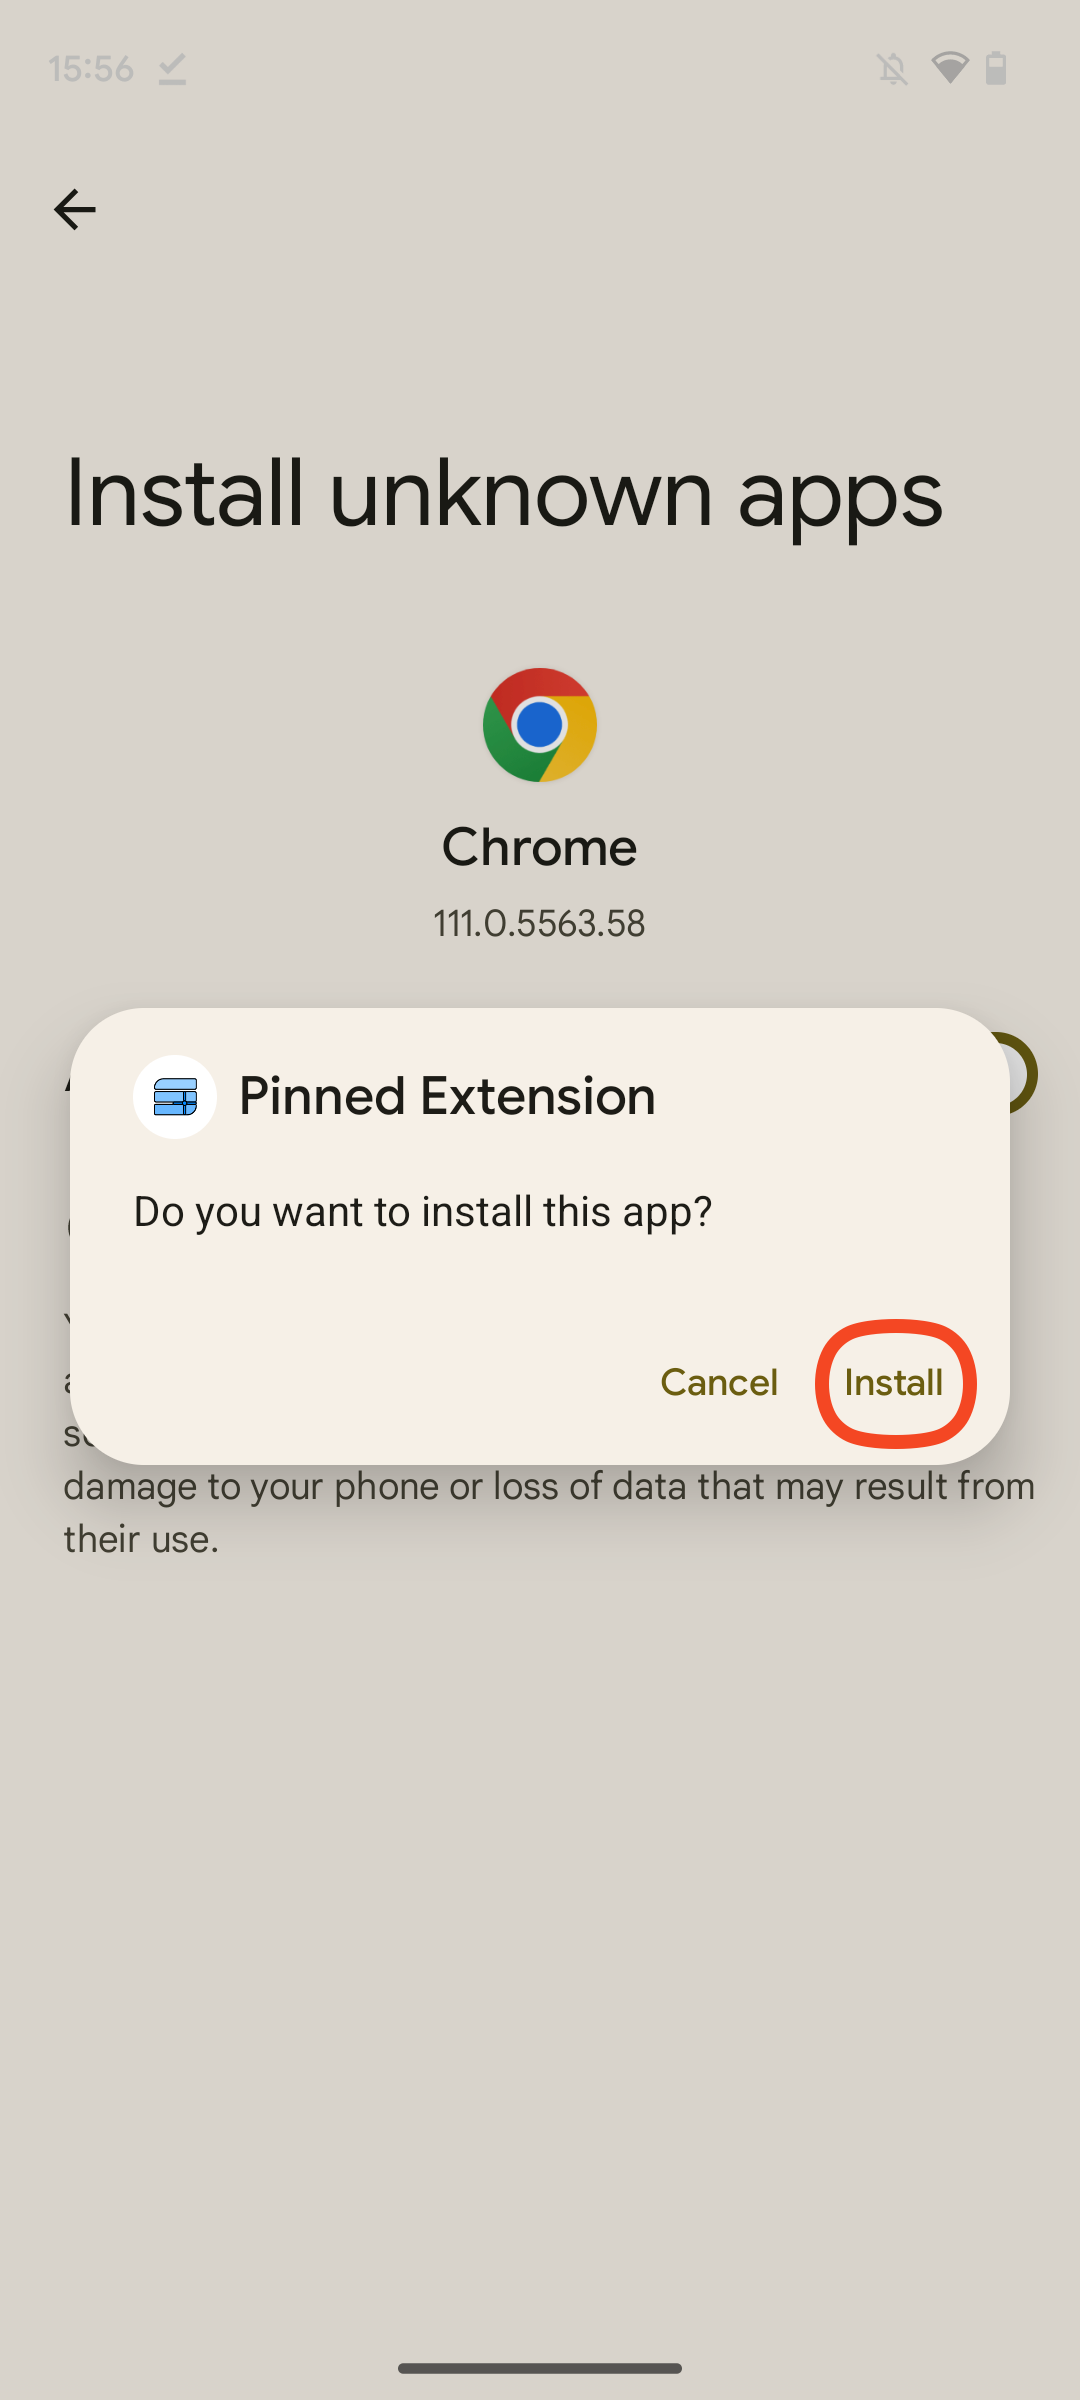 Captura de tela do pop-up de instalação do aplicativo Pinned Extension, com 